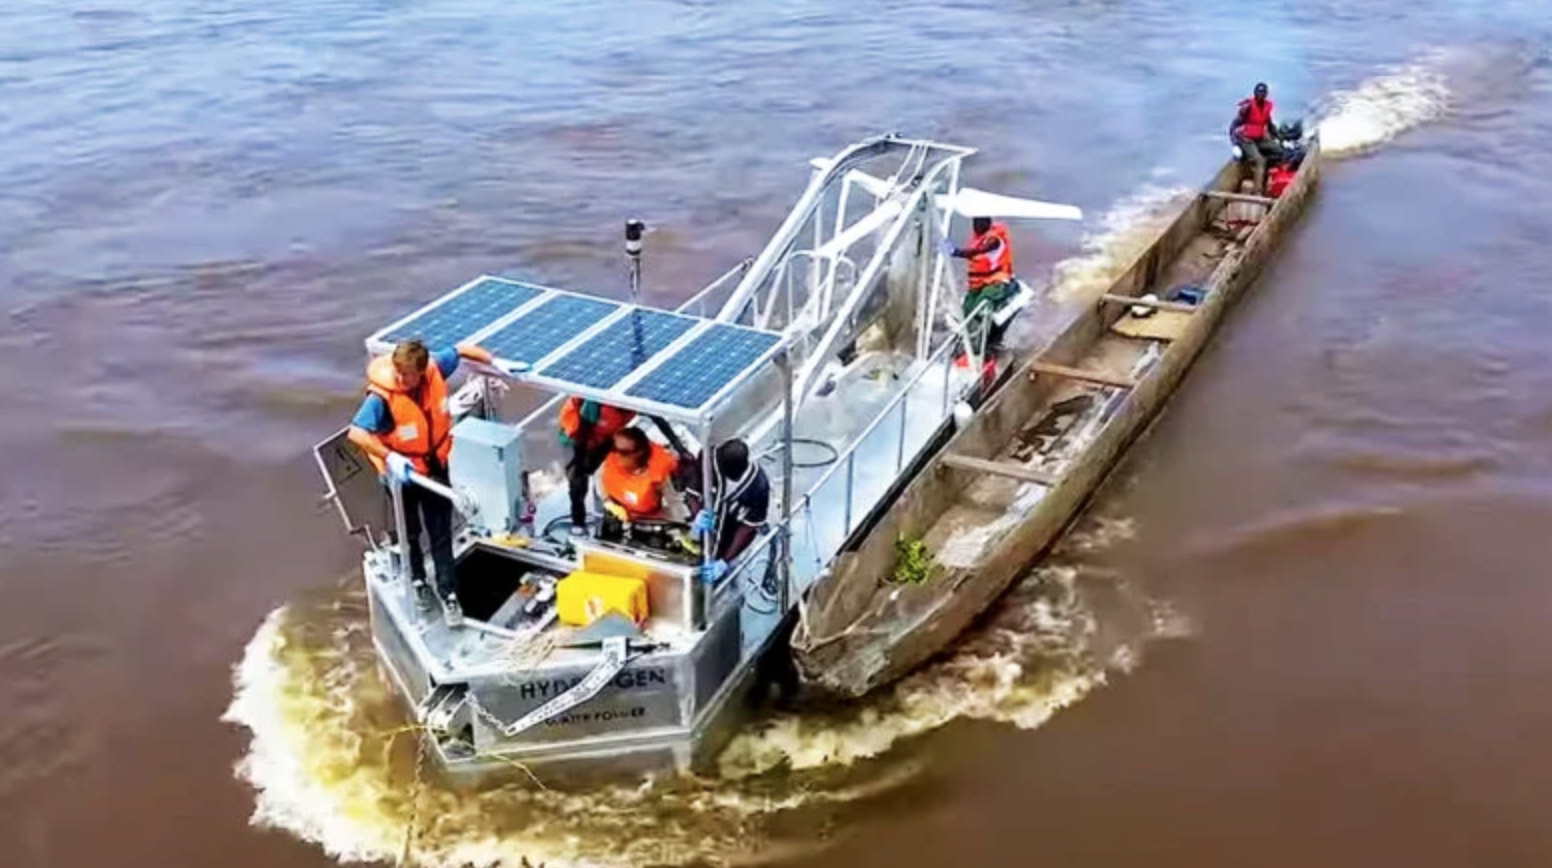 “Le kWh le moins cher d’Afrique” une hydrolienne flottante conçue dans le Finistère installée sur le fleuve Congo